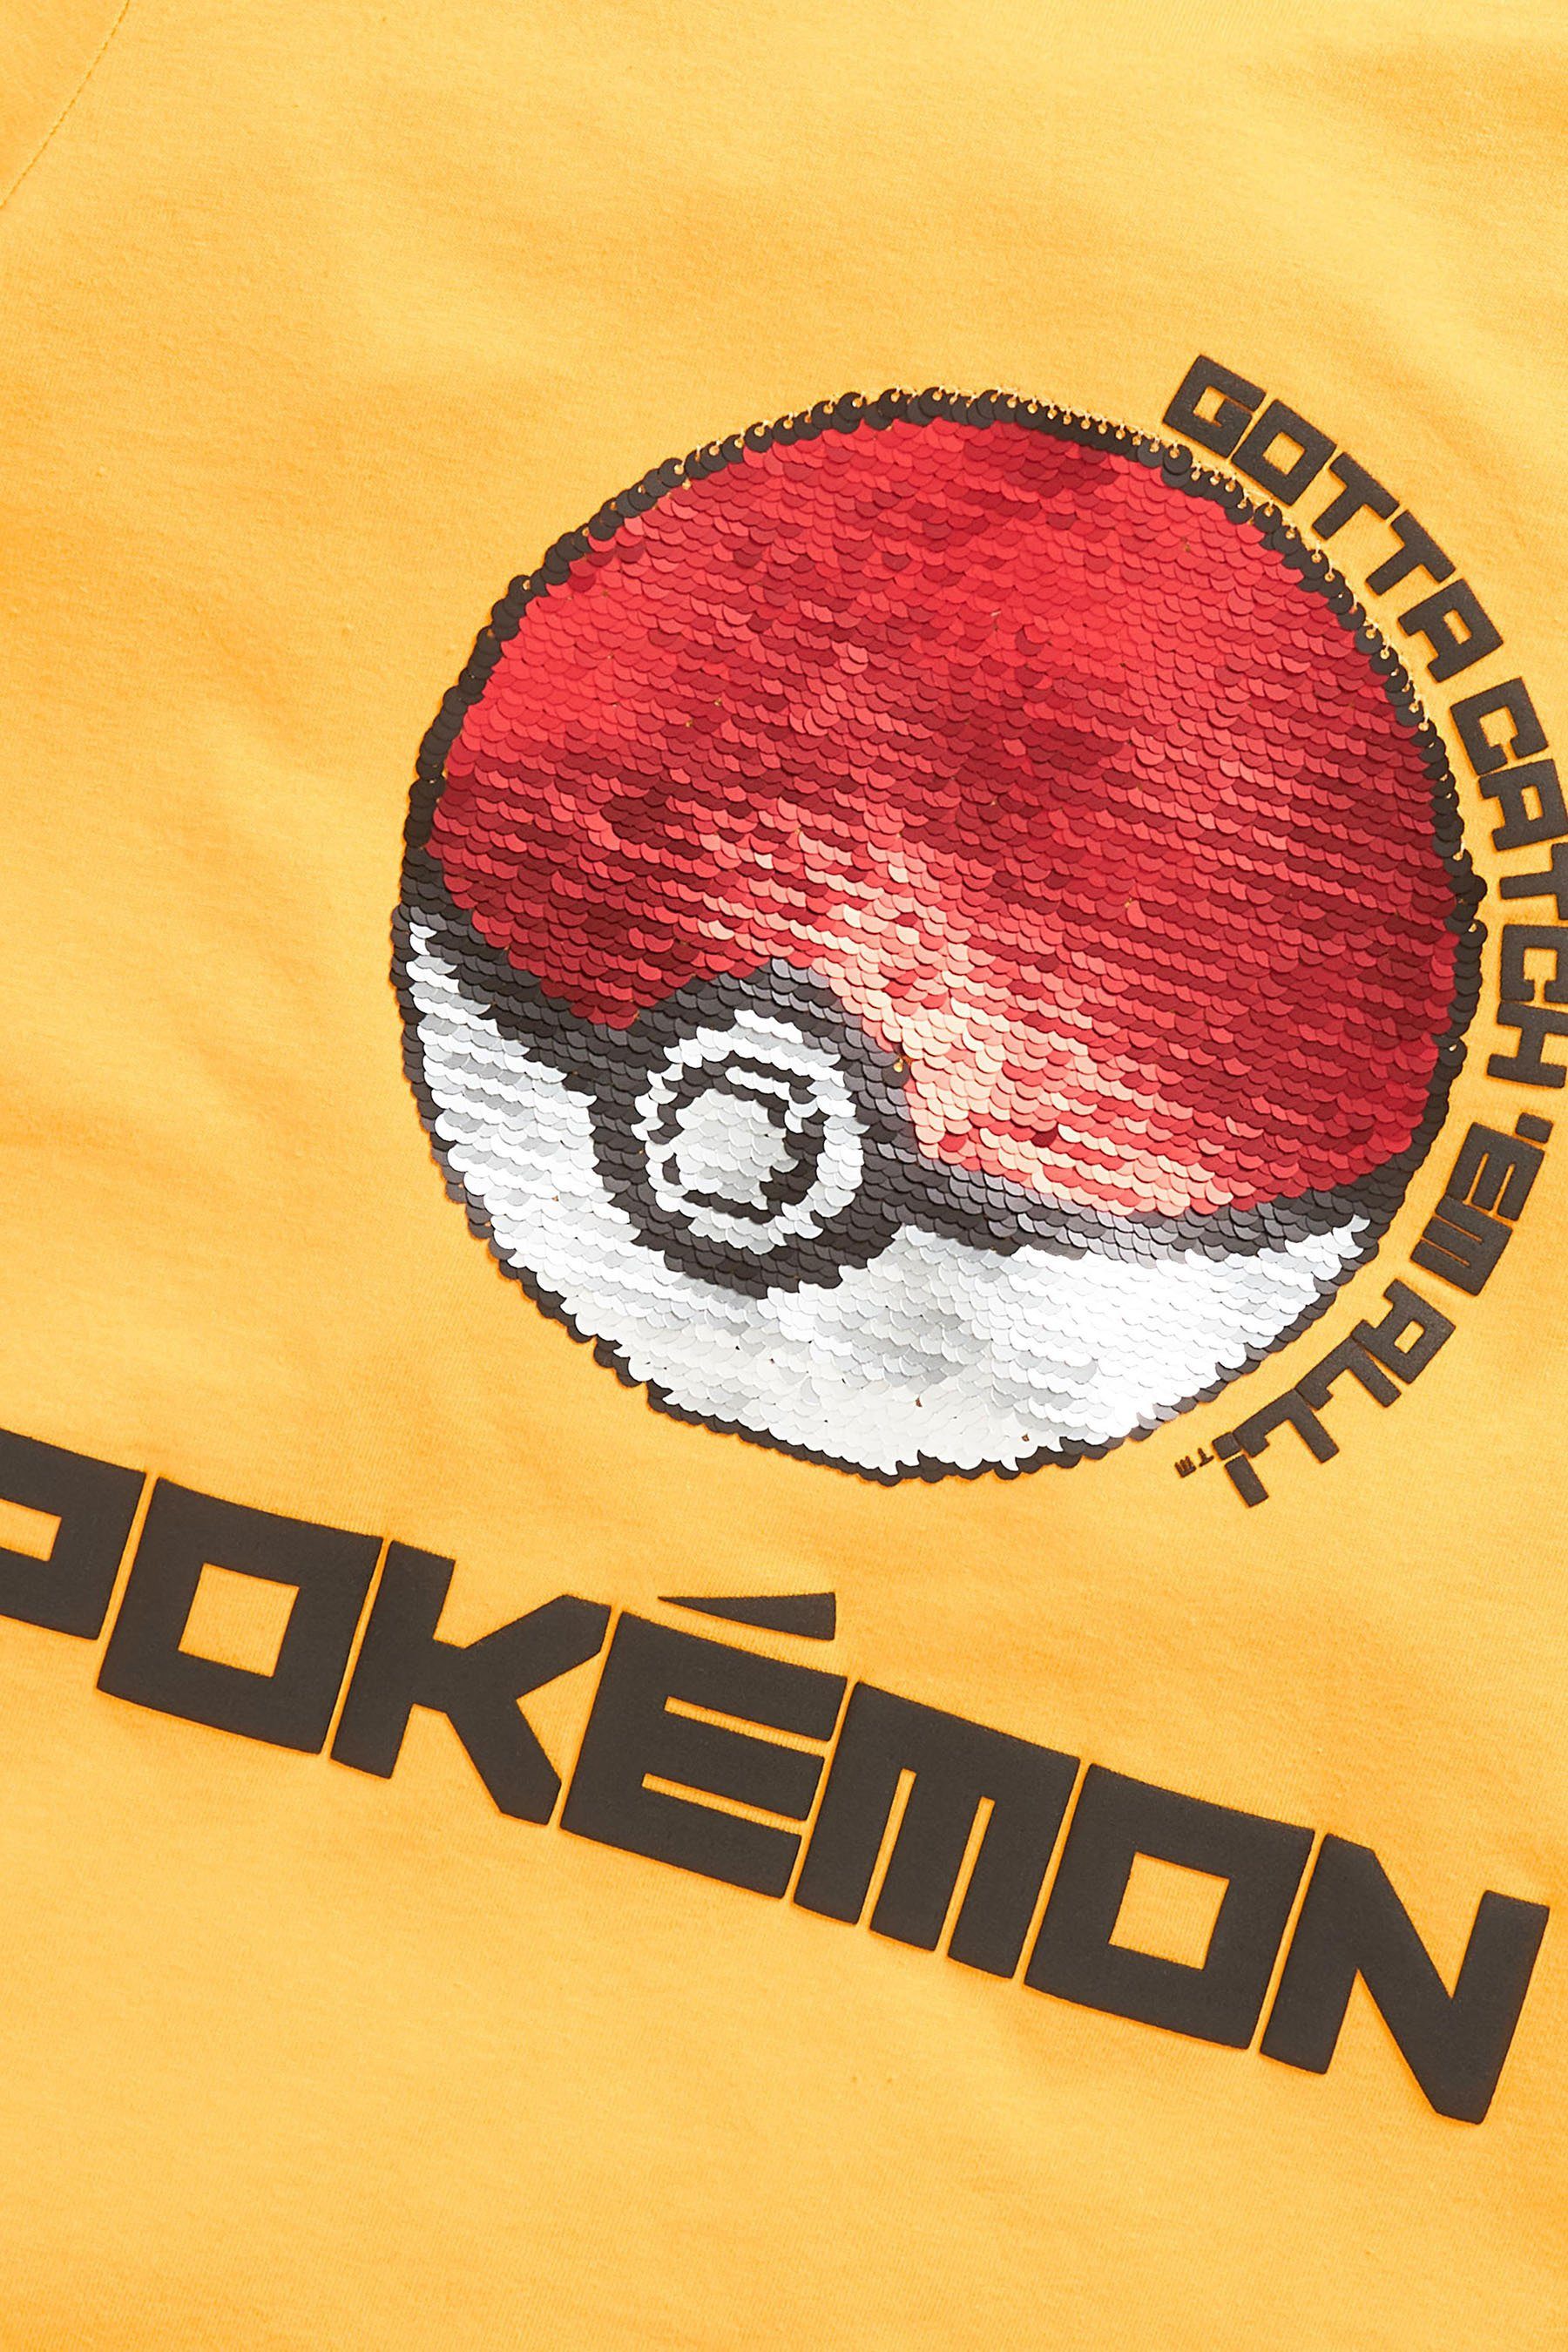 Next T-Shirt T-Shirt von Minecraft Pokémon (1-tlg) mit Yellow Pailletten